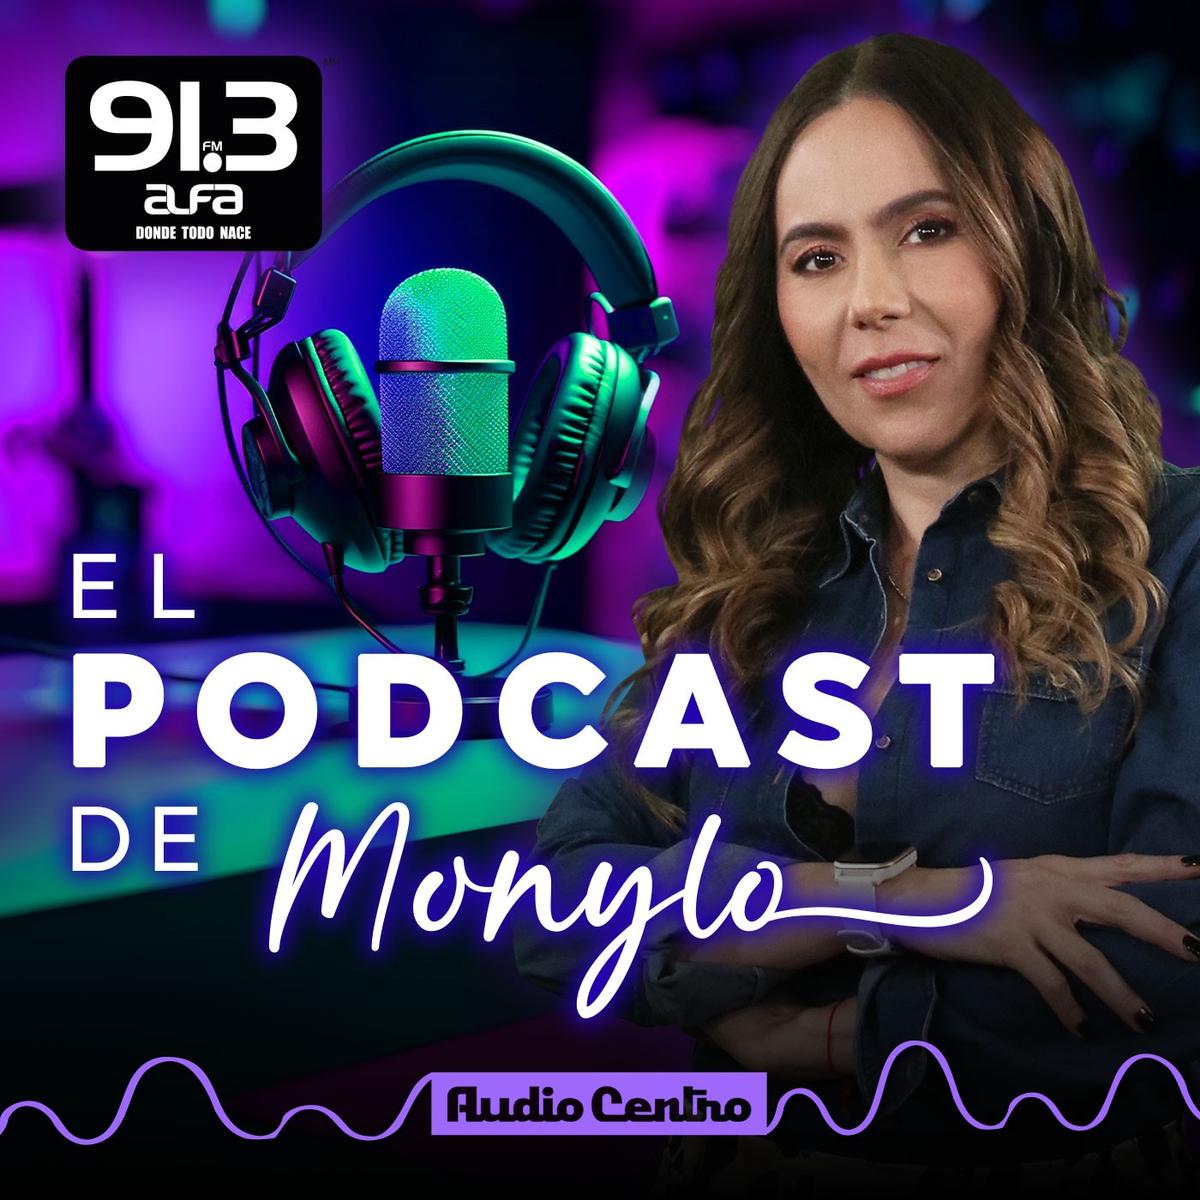 El podcast de Monylo